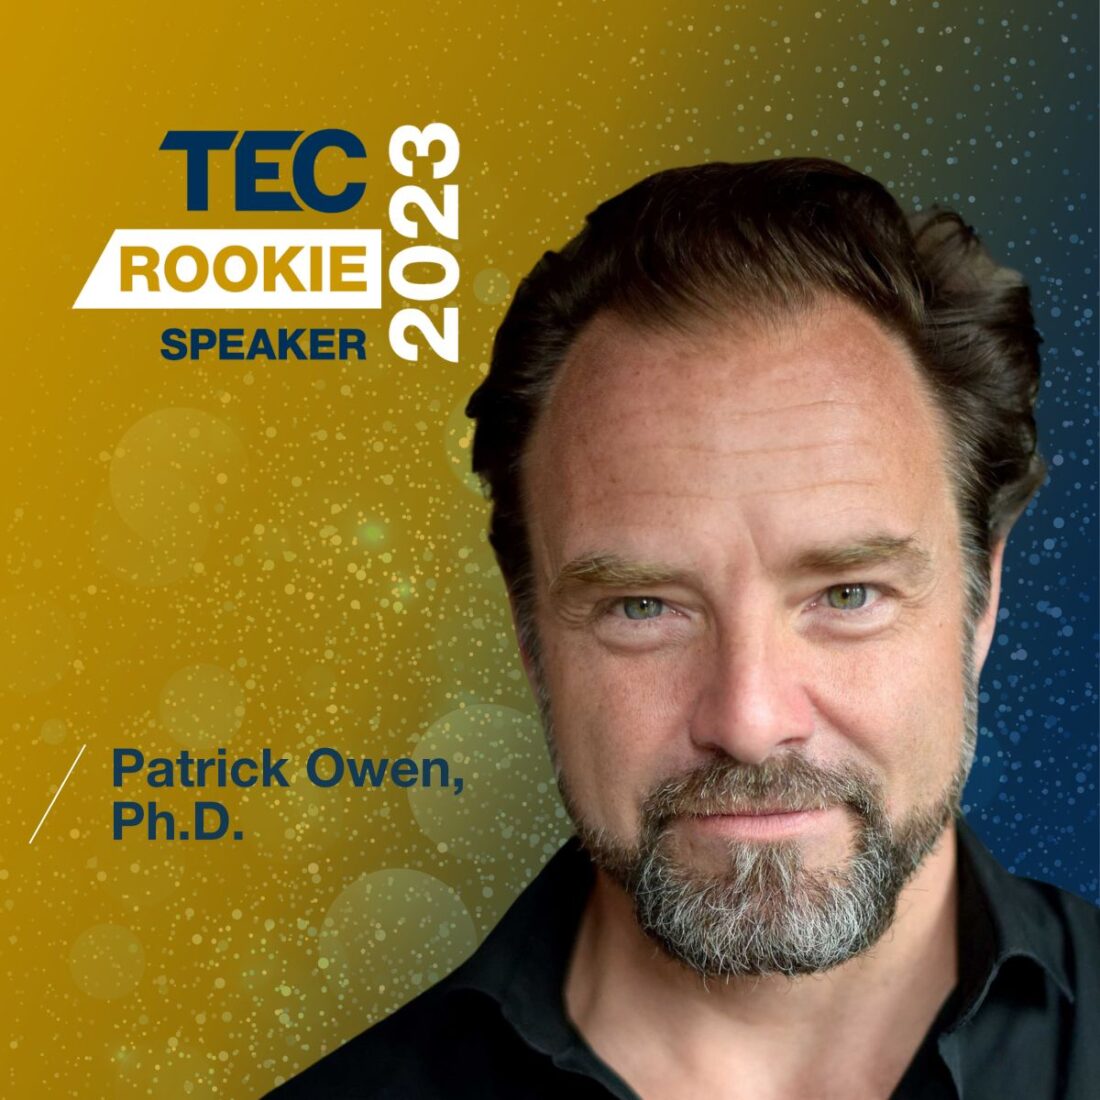 Patrick Owen, Ph.D.
Ancestral Health & Functional Nutrition
 Keynote speaker Canada - TEC Canada Speaker: TEC Rookie Speaker of the Year 2023